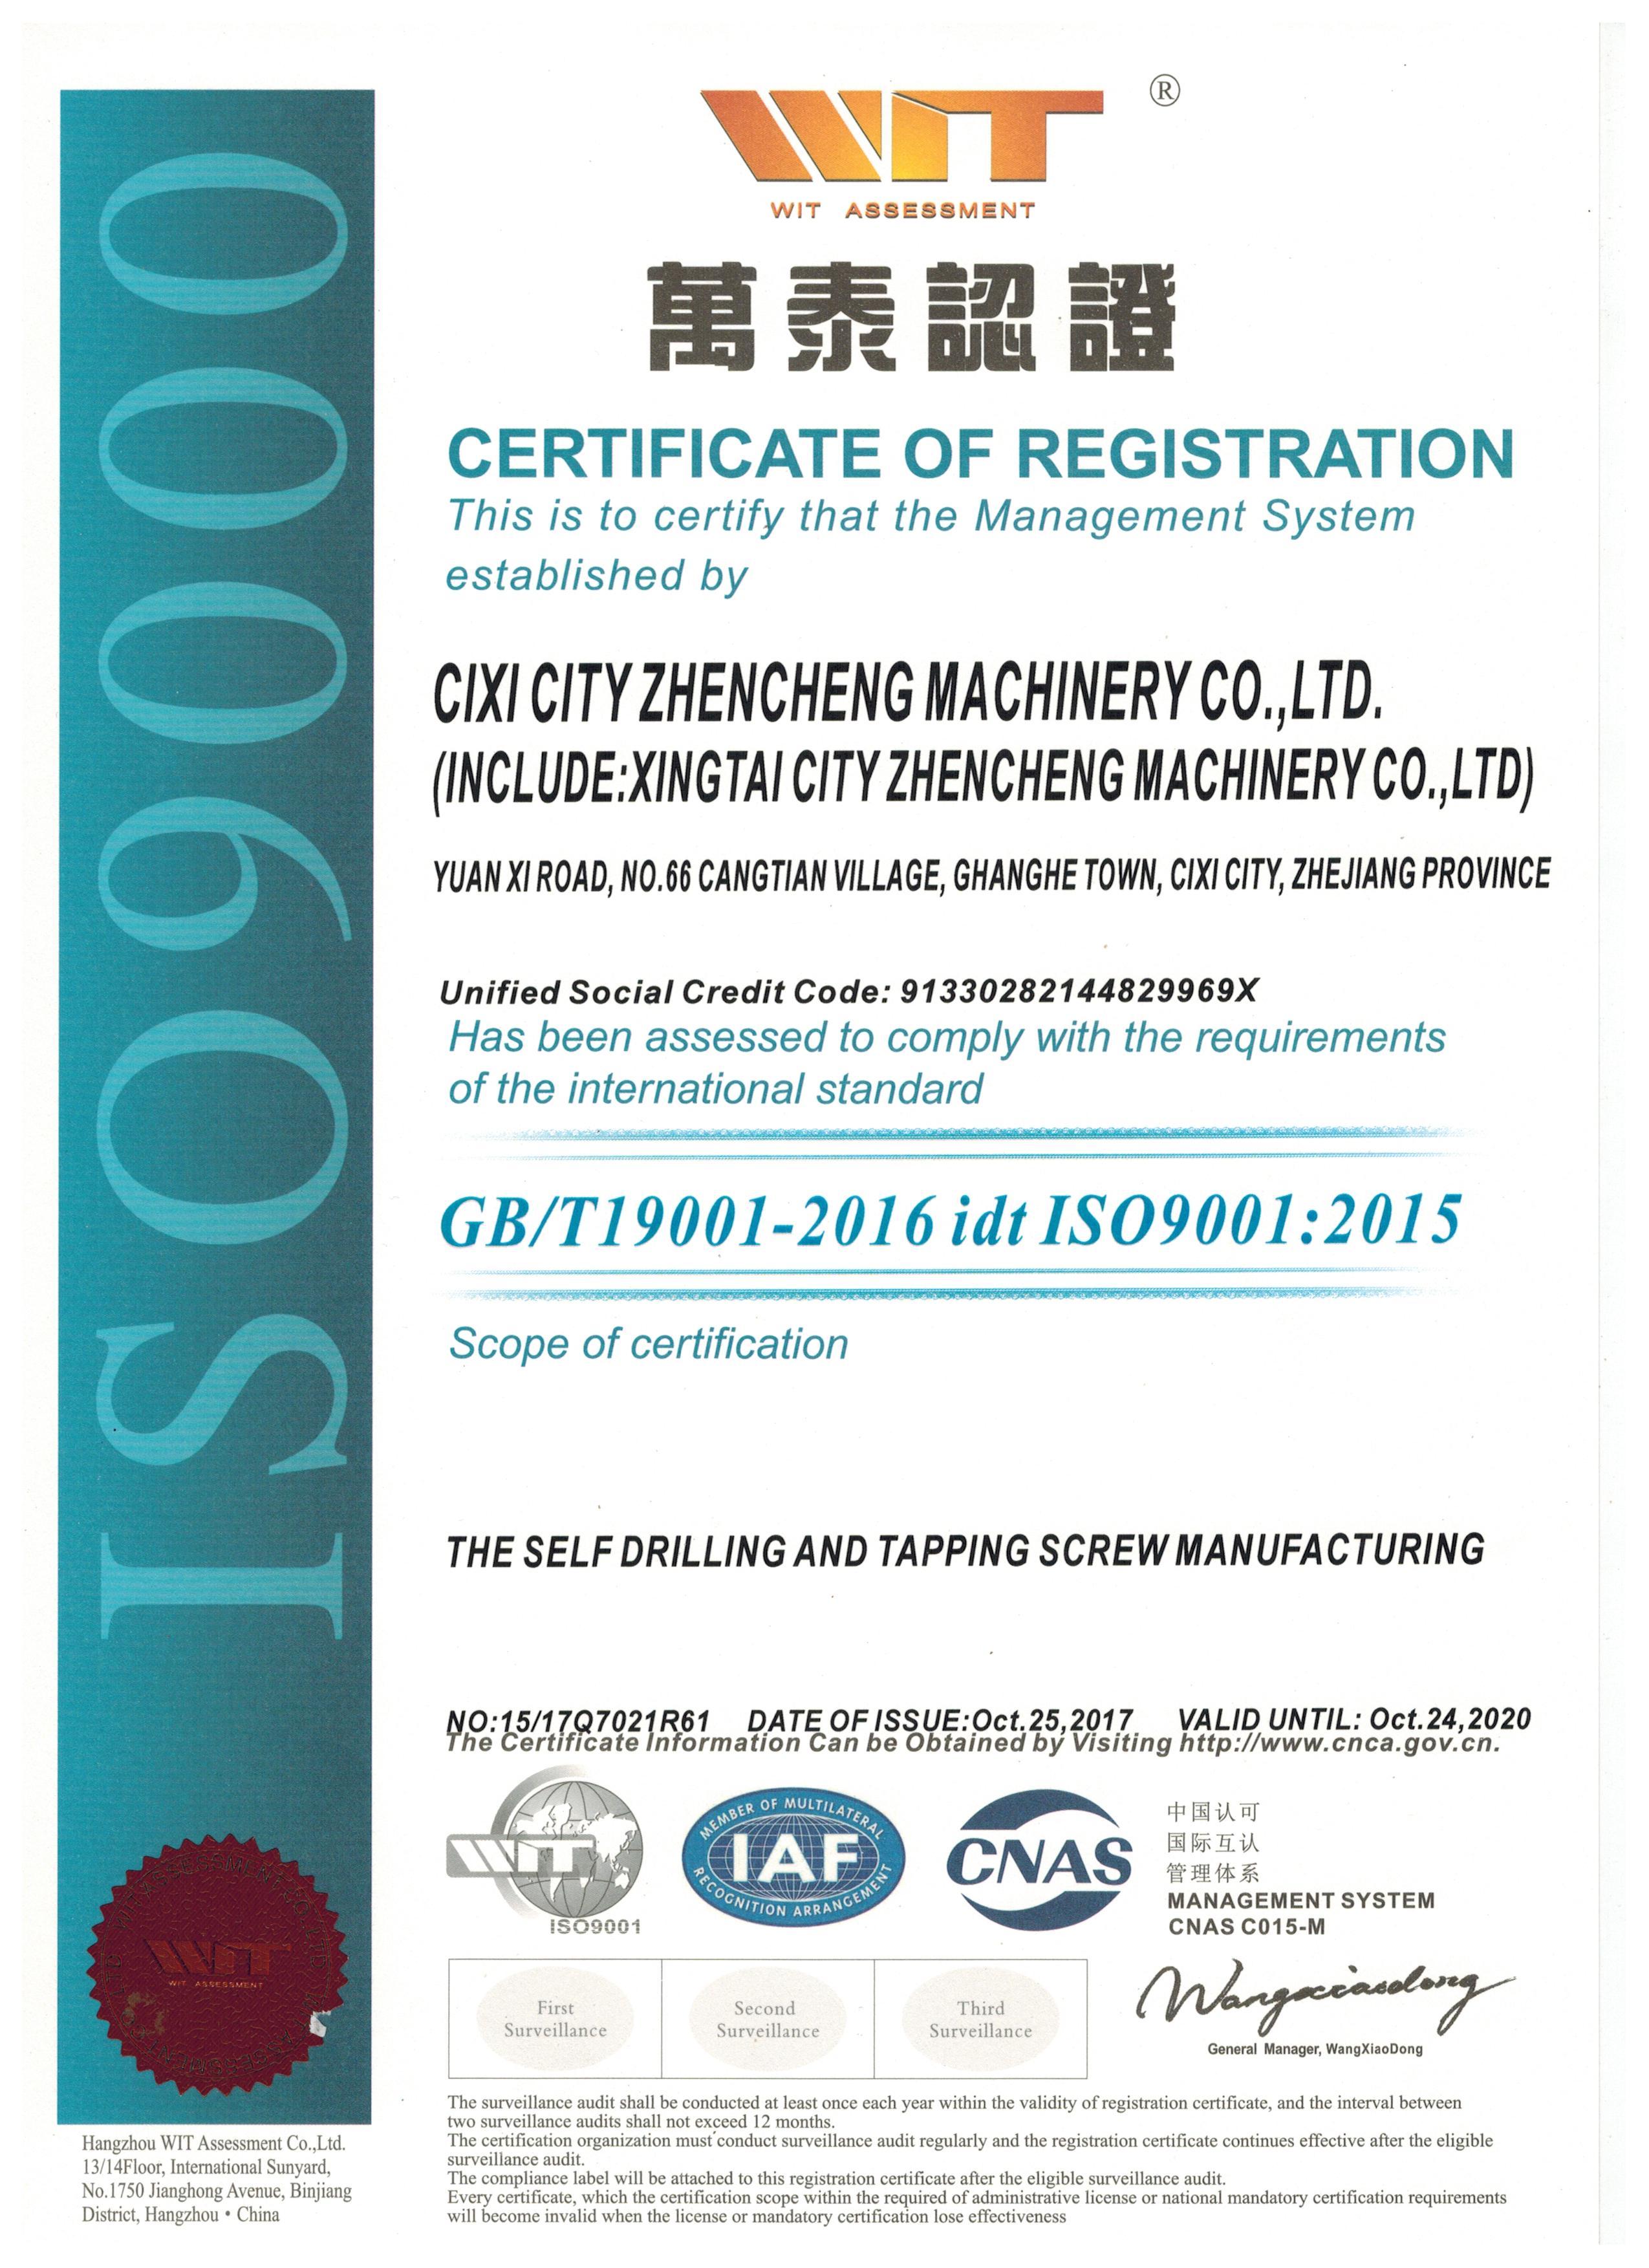 תעודת ISO9000